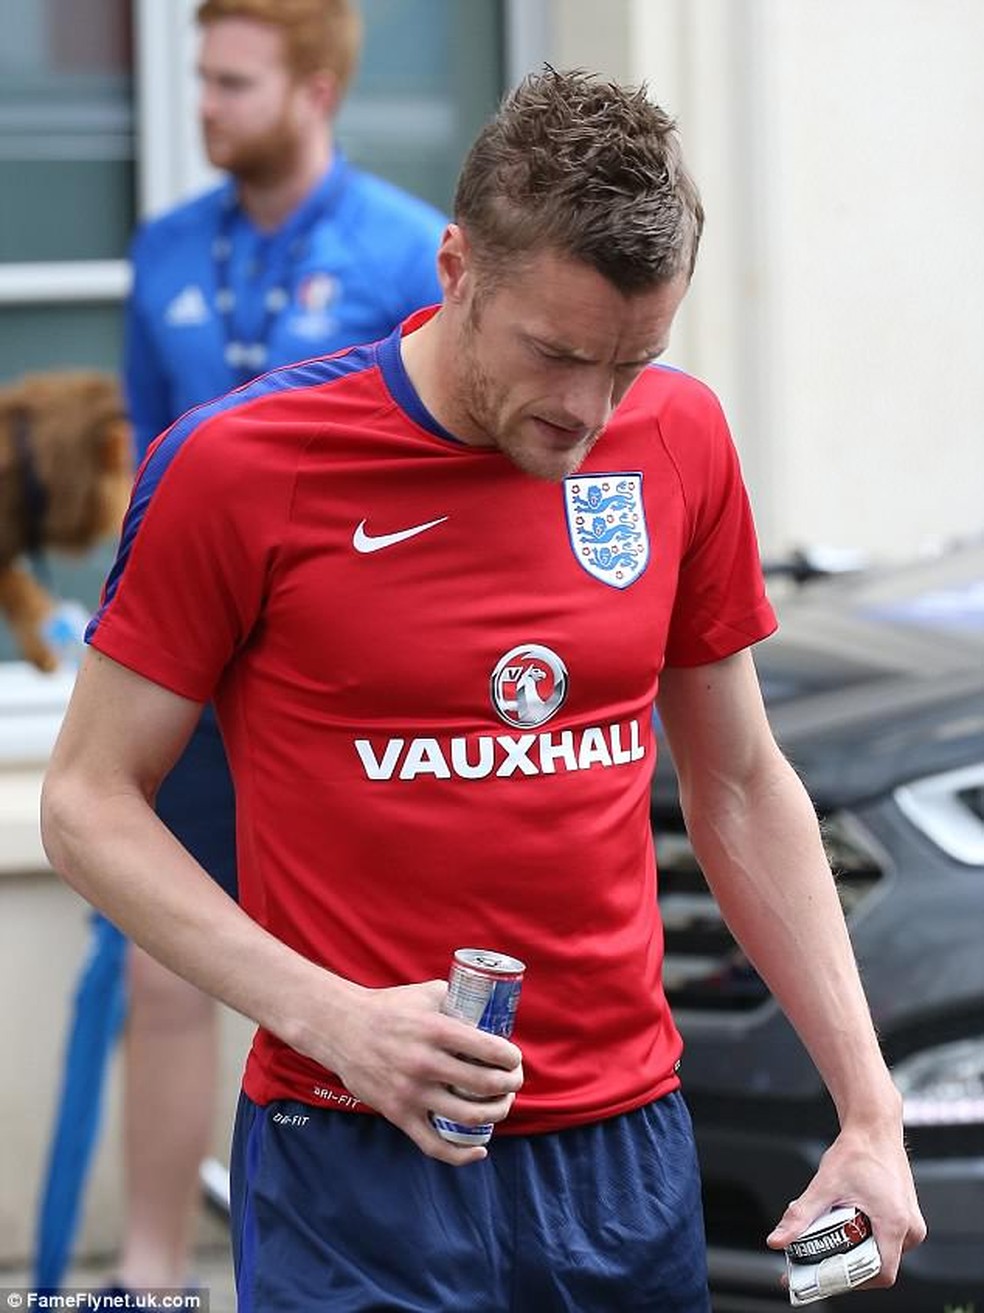 Jamie Vardy foi flagrado com produto de nicotina durante a Eurocopa de 2016 — Foto: Reprodução / Daily Mirror